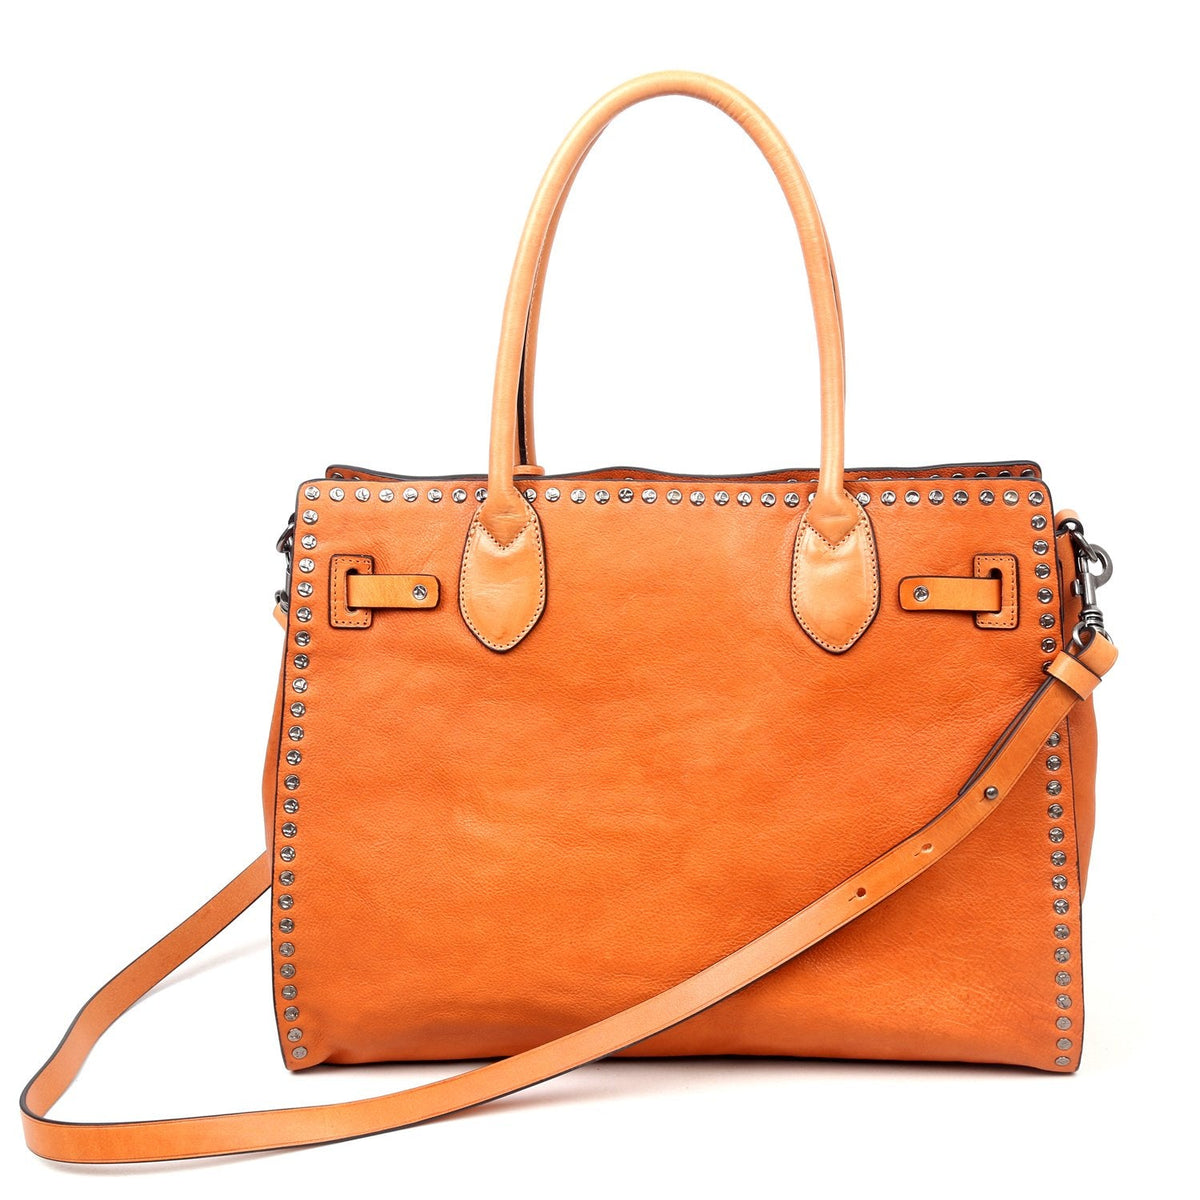 Bags & Luggage - Women's Bags - Top-Handle Bags Westland Satchel